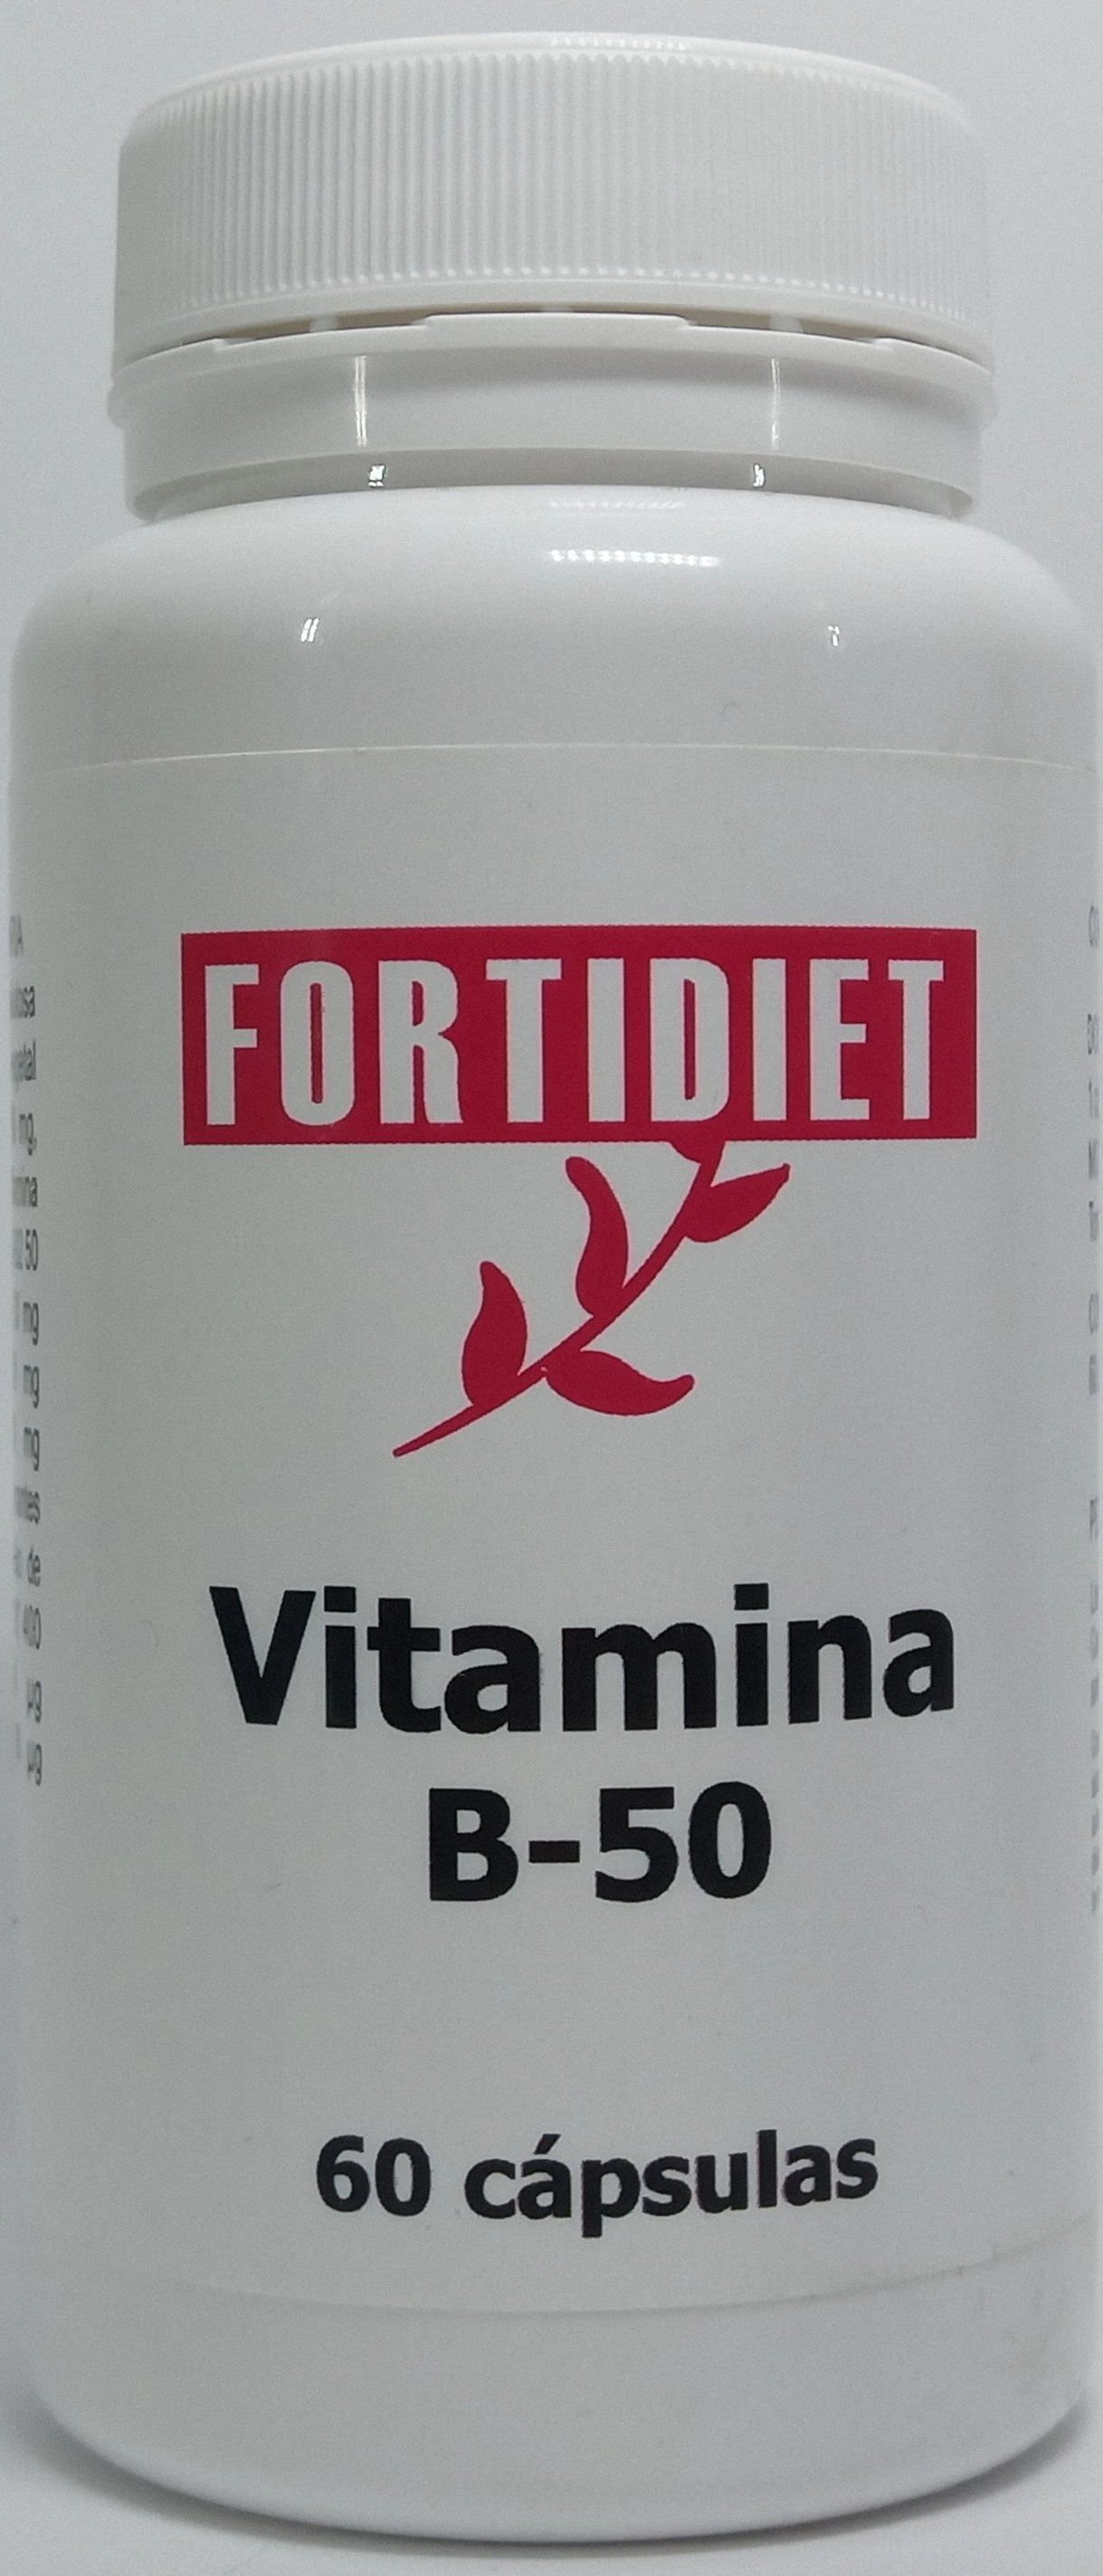 Fortidiet Vitamina b-50 60 caps.